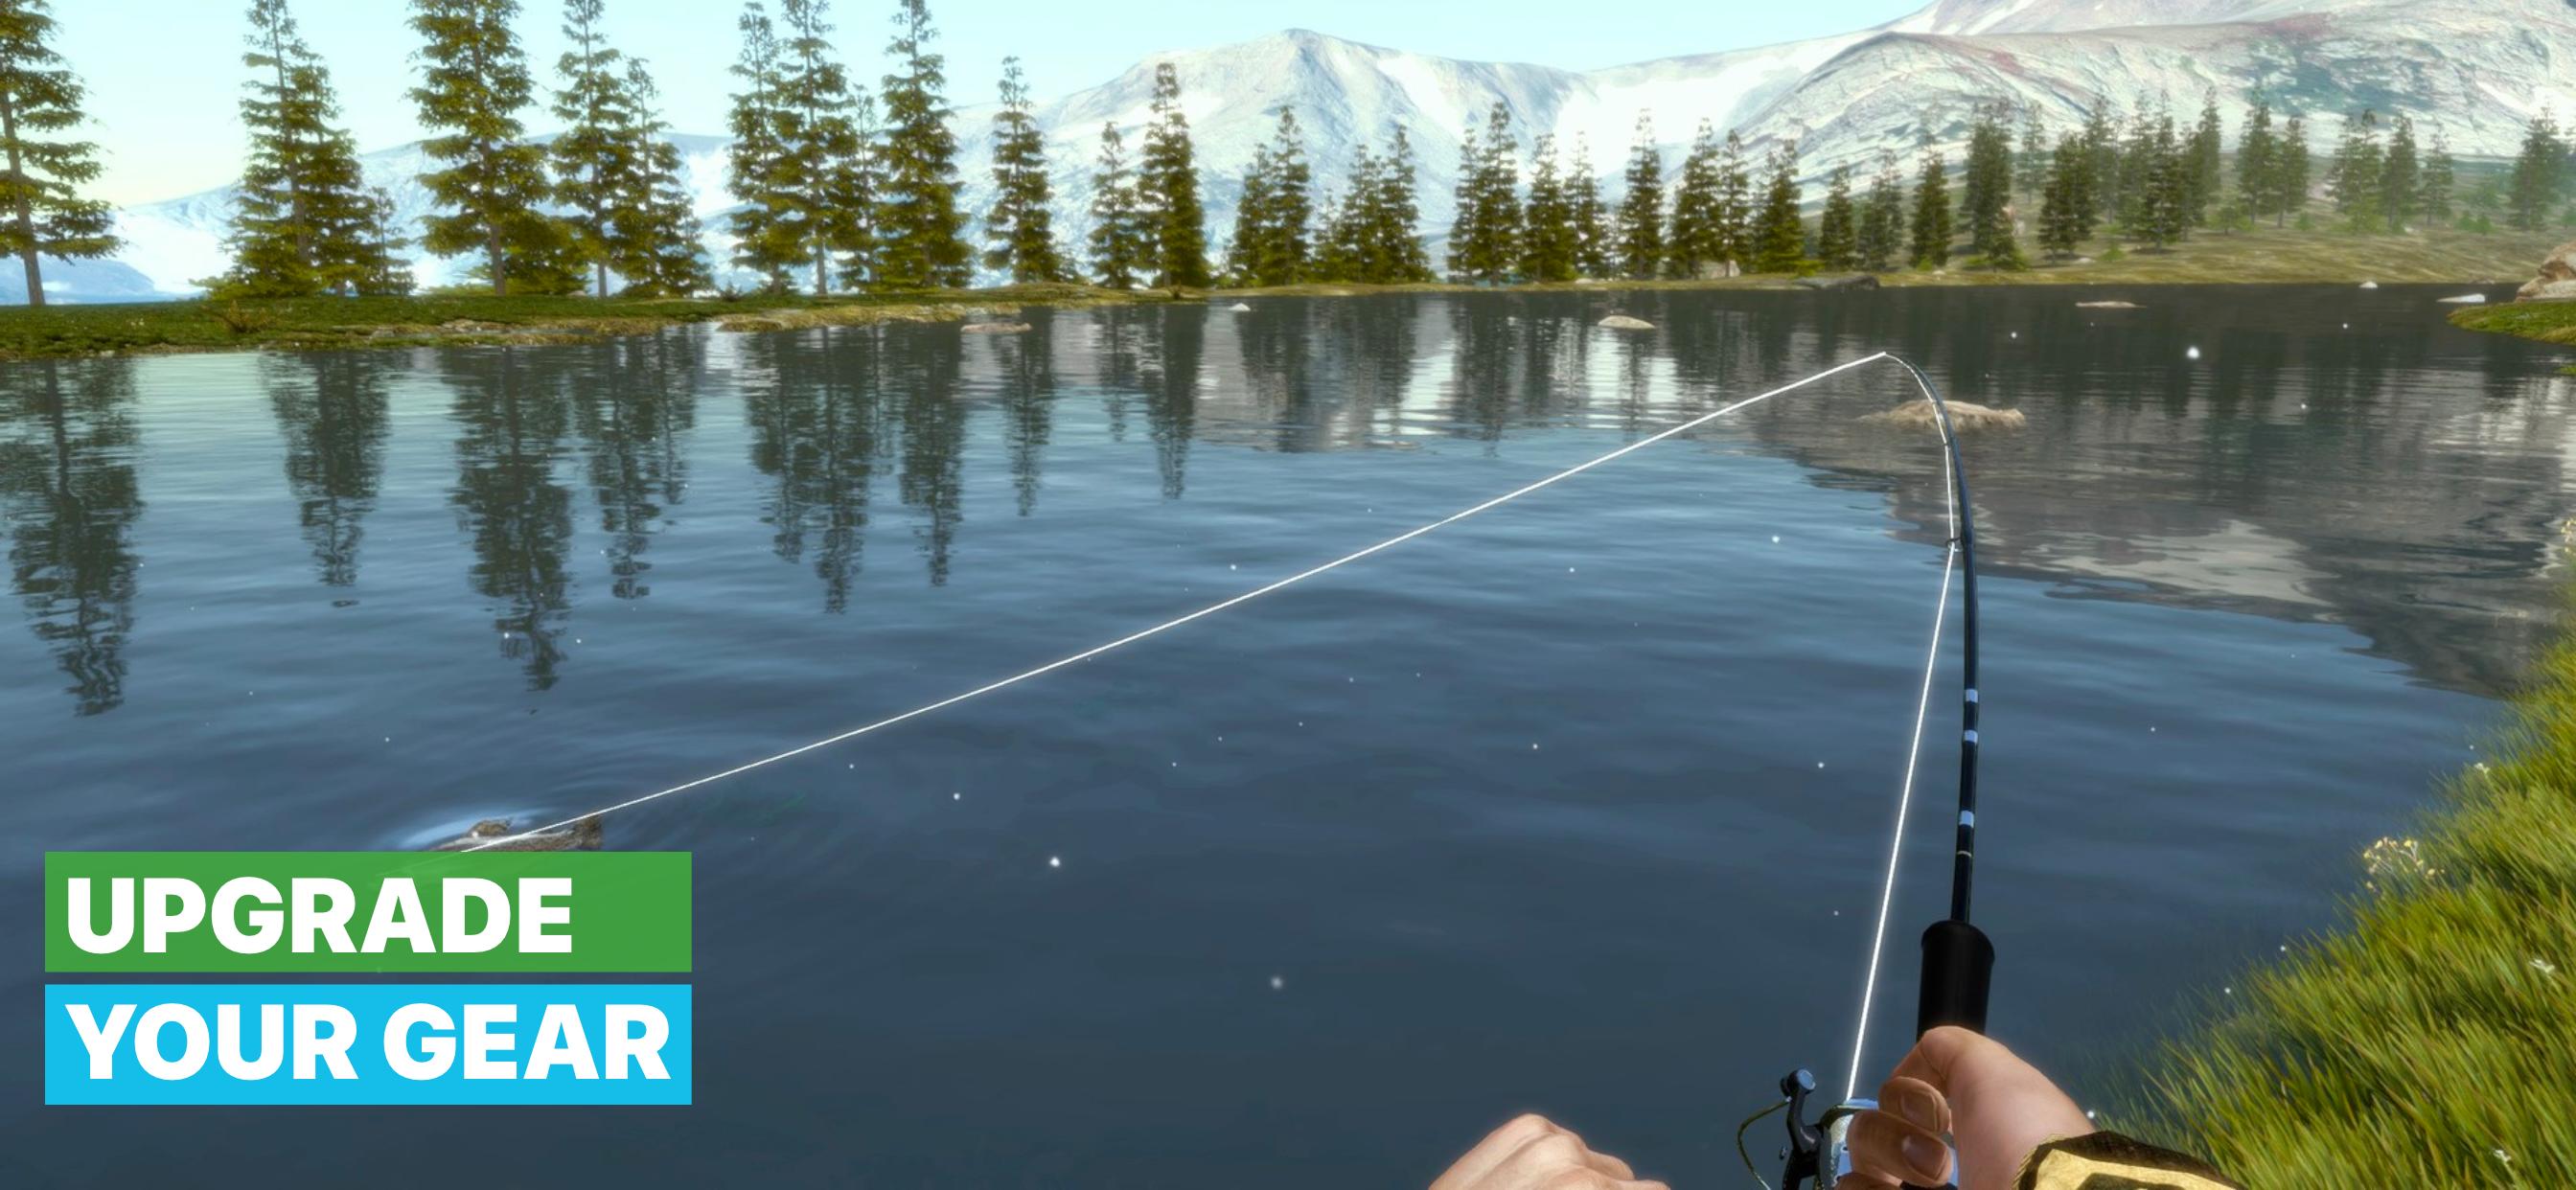 Игра рыбалка все открыто. Игра рыбалка фишинг. Фишер симулятор. Симулятор рыбалки. Симулятор рыбы.